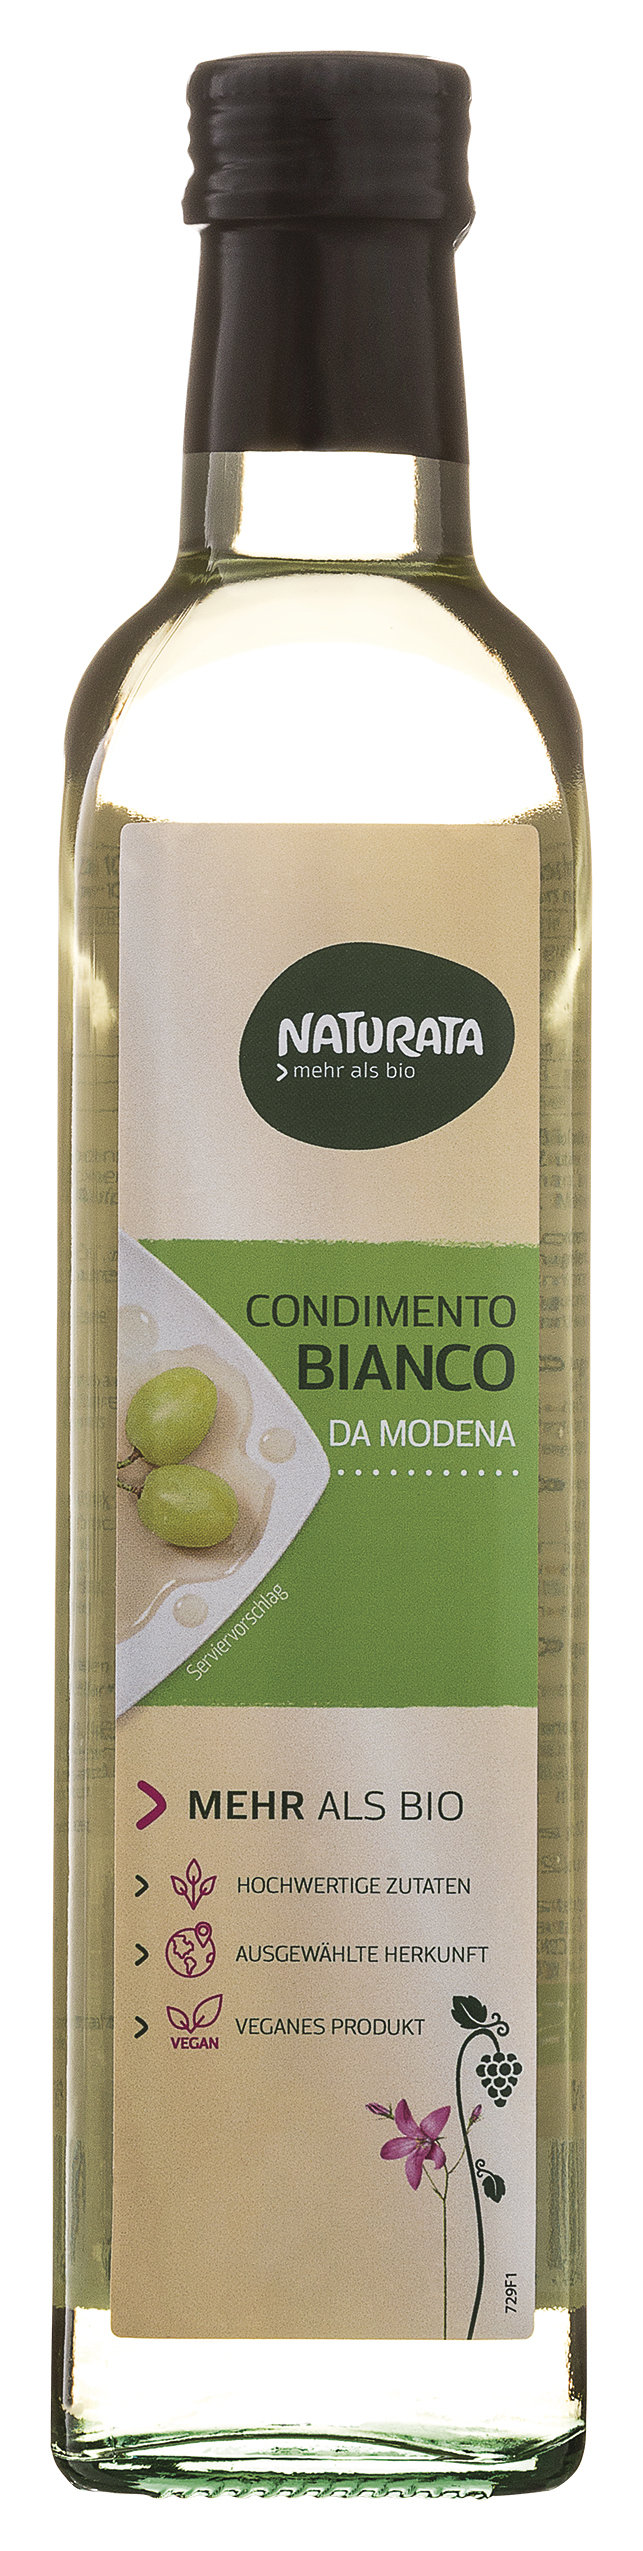 Naturata Balsamico Bianco Condimento 500ml